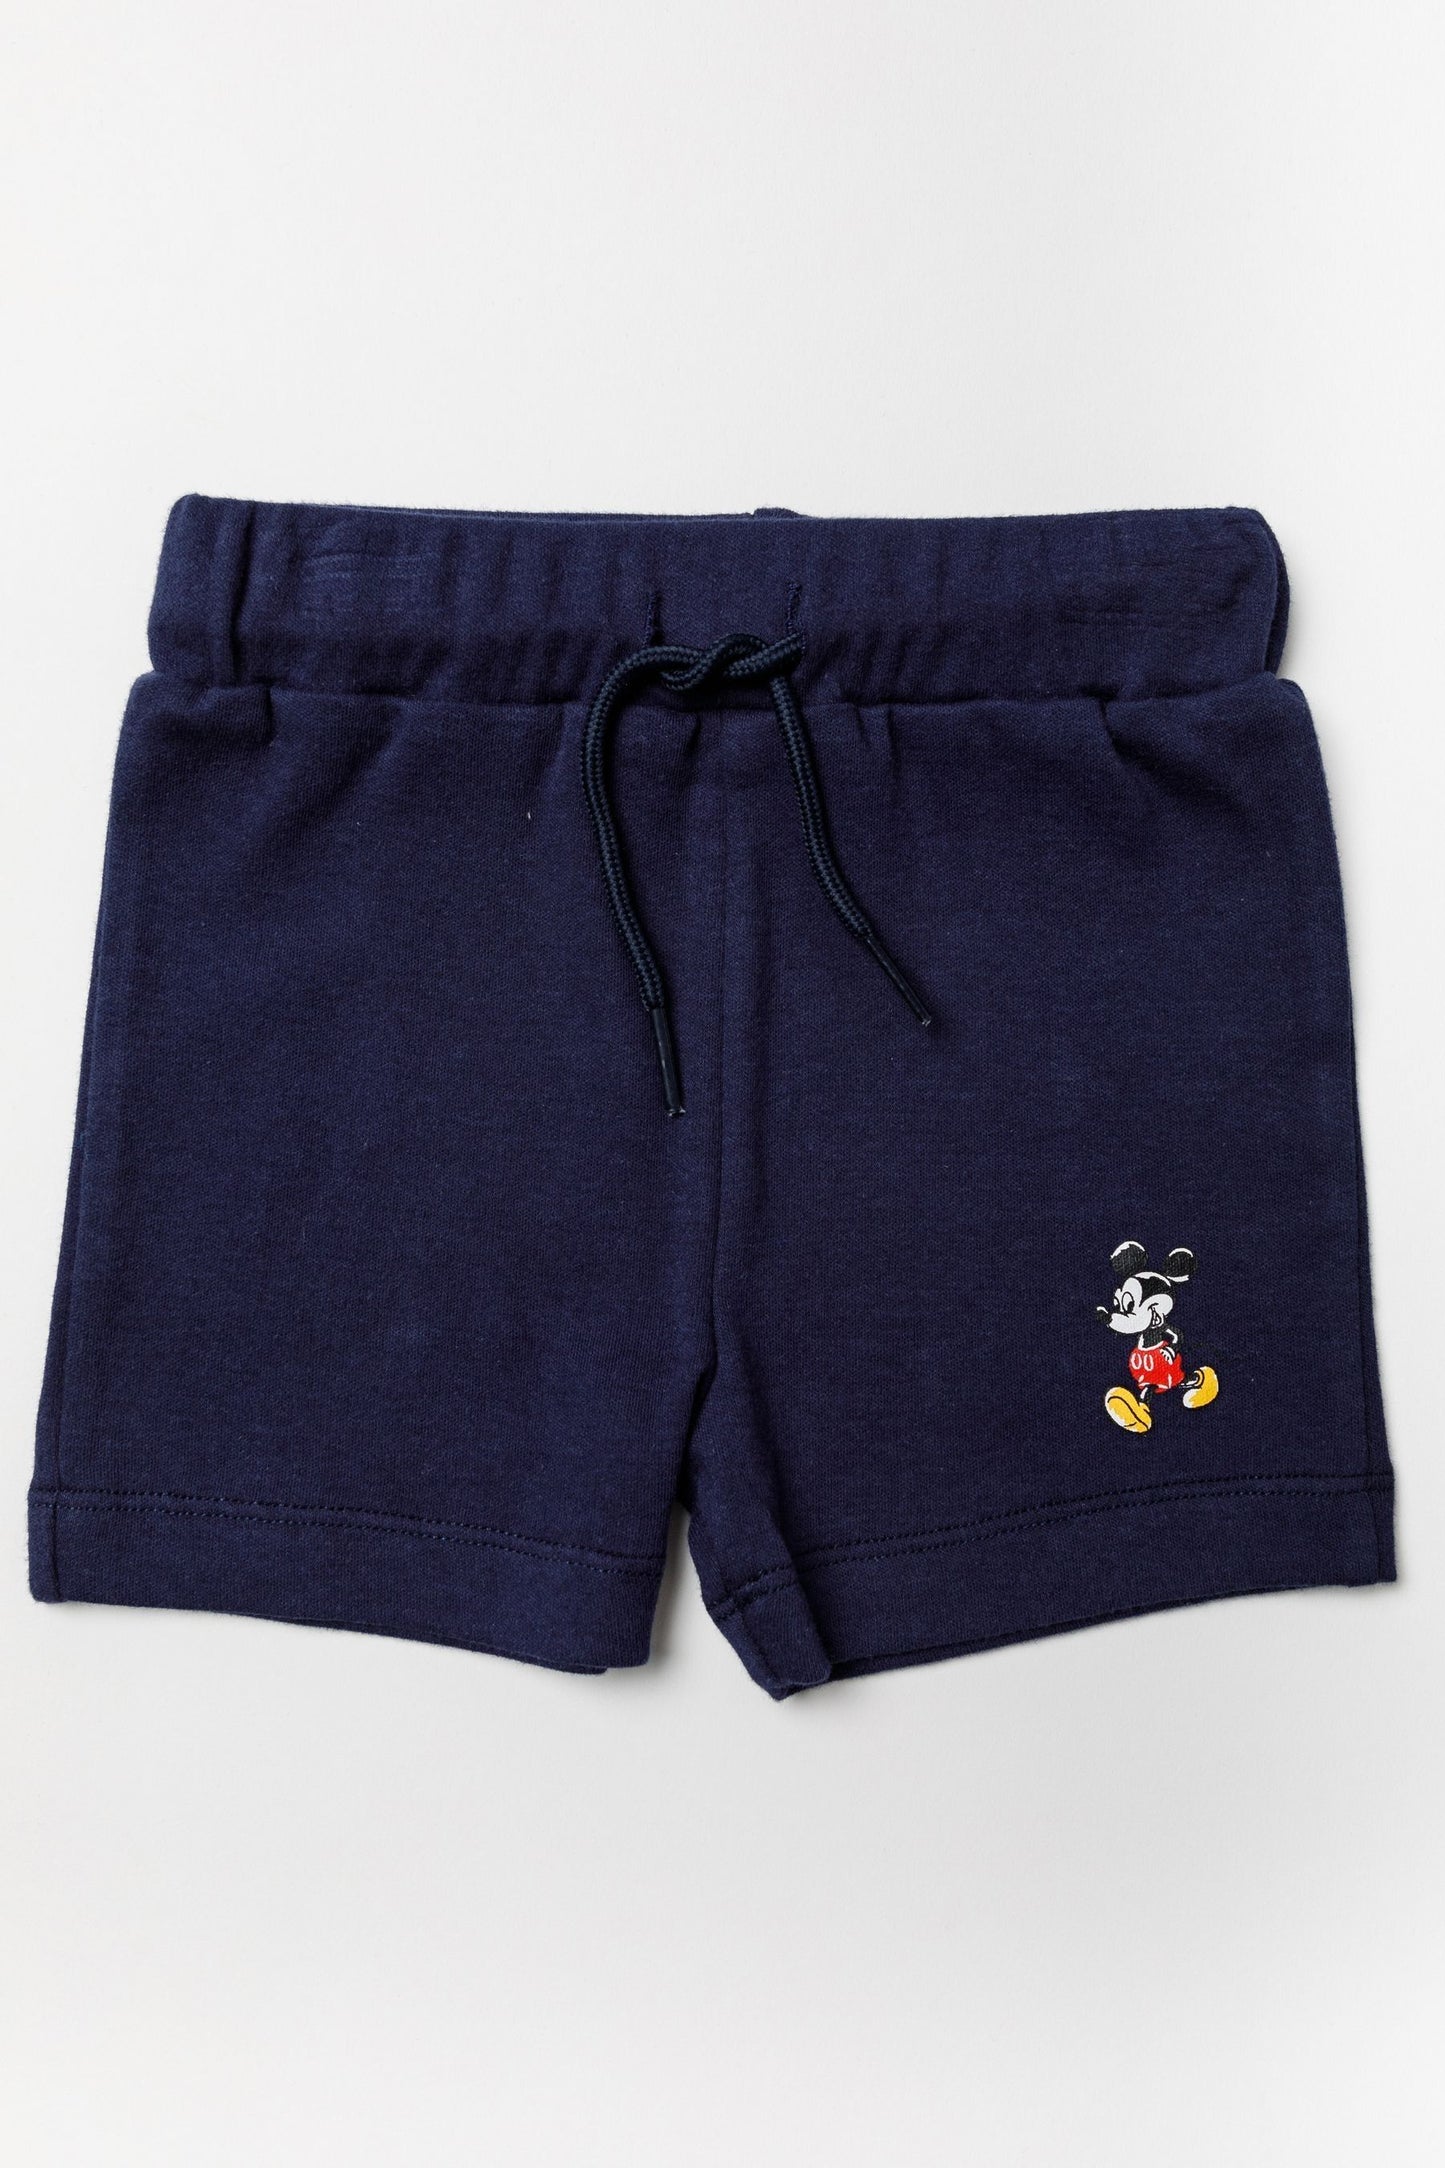 Disney - Conjunto de camisa e shorts azul Mickey Mouse